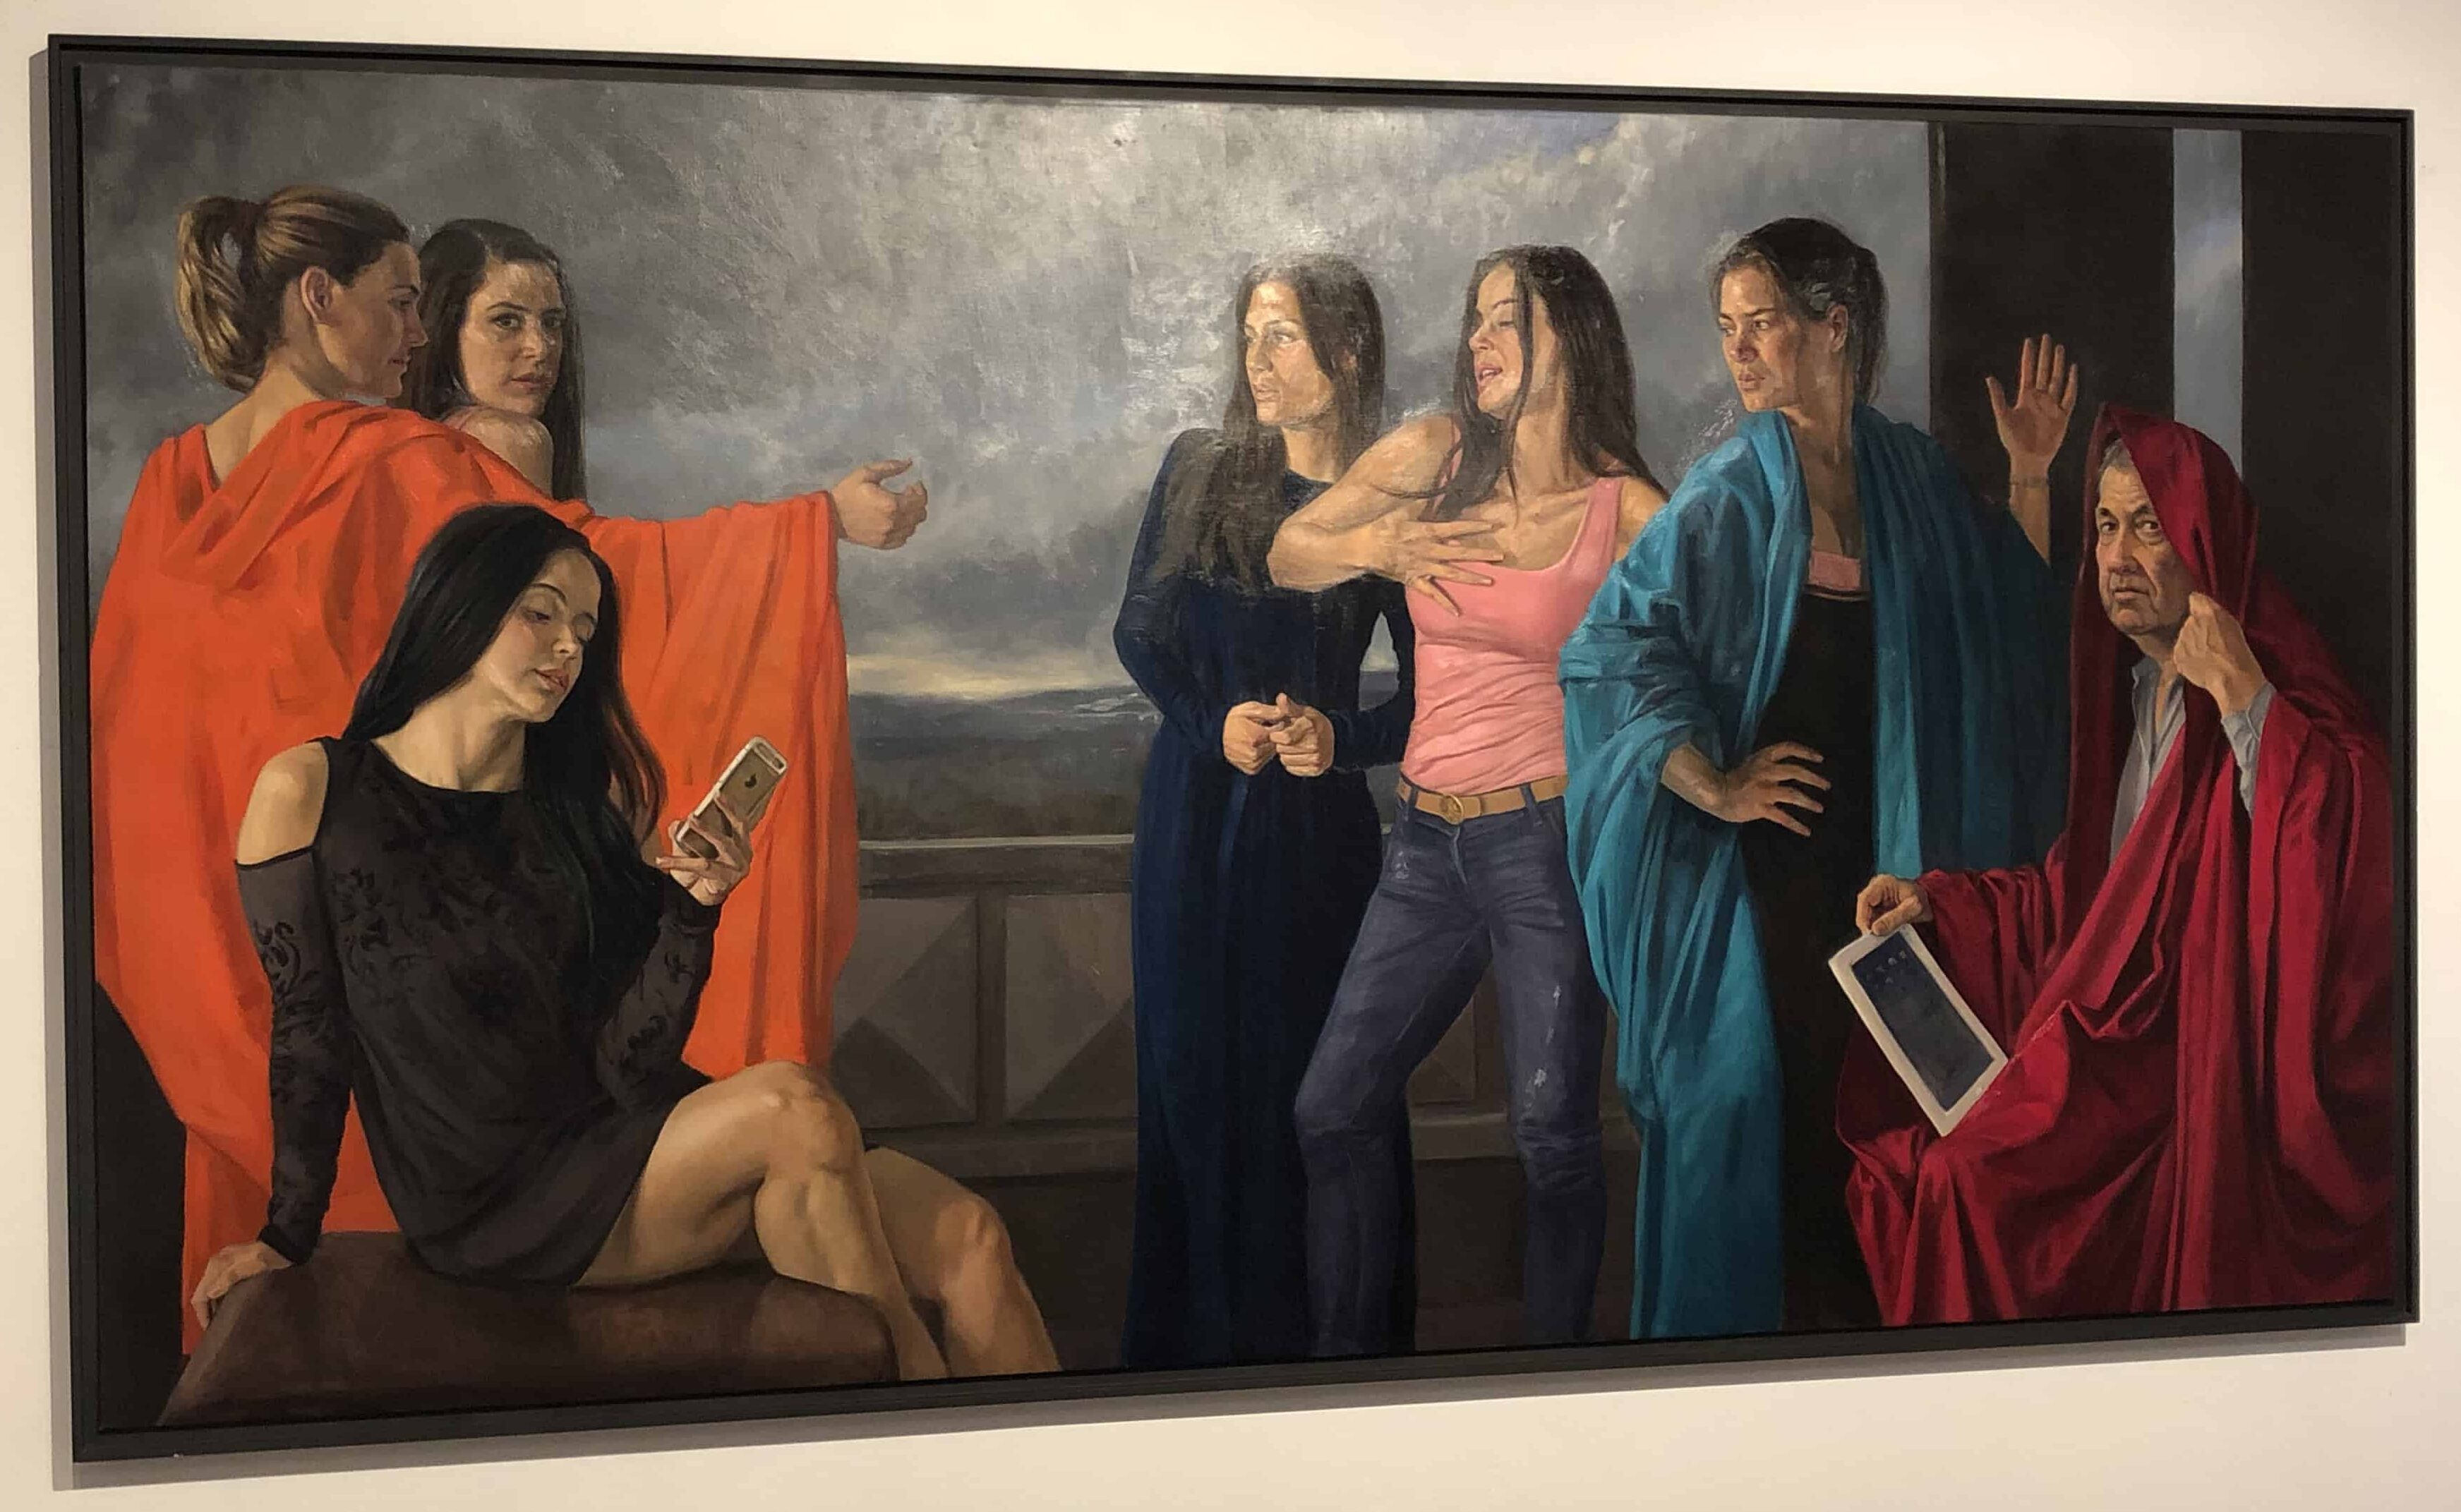 El moralista y sus hijas by Darío Ortiz (2017) at the Modern Art Museum of Cartagena, Colombia